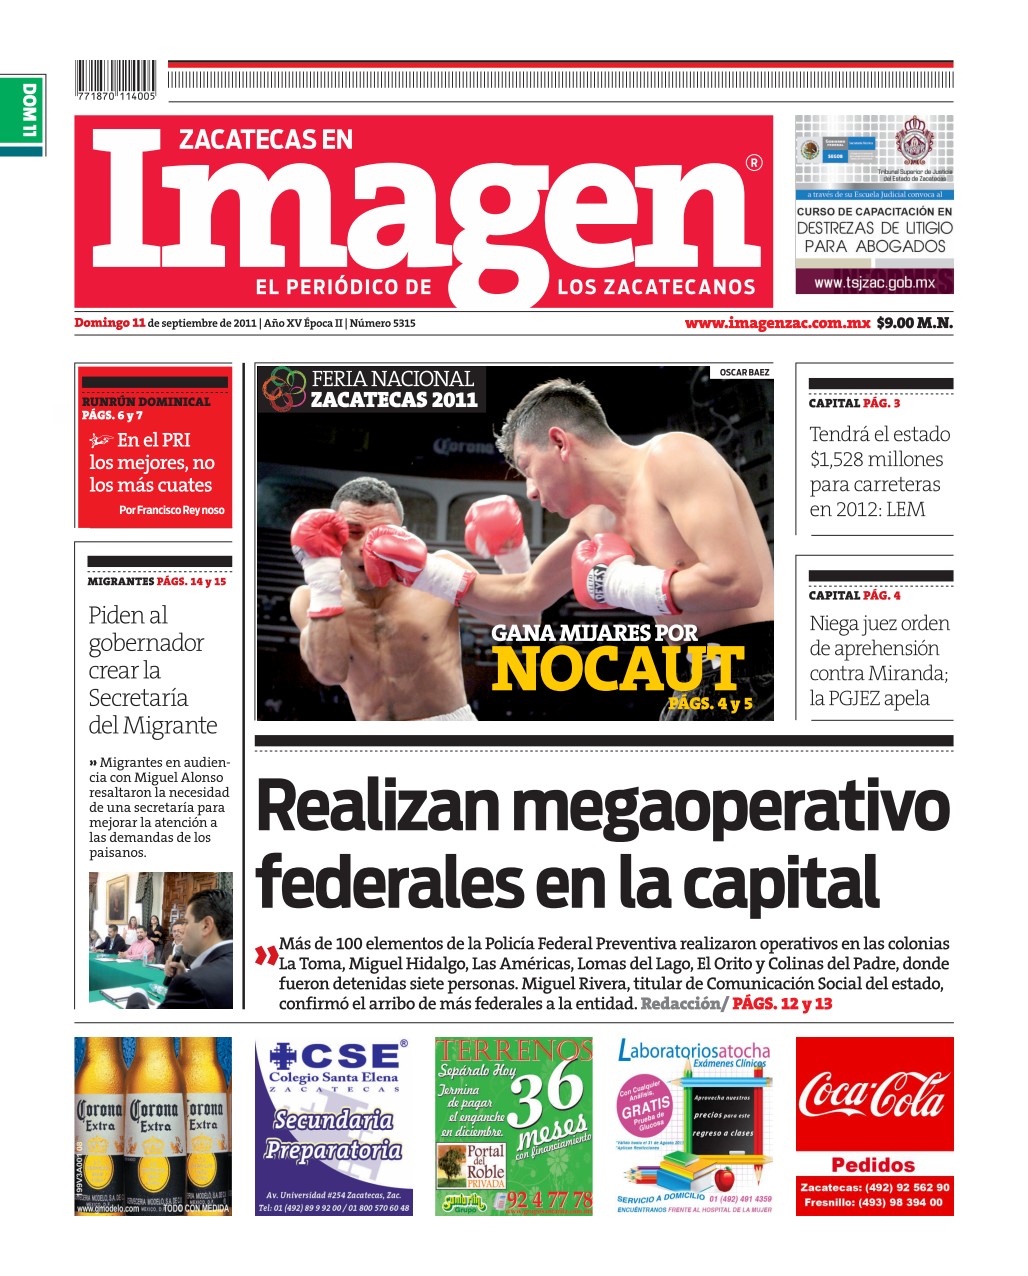 Imagen Zacatecas edición del 11 de Septiembre 2011